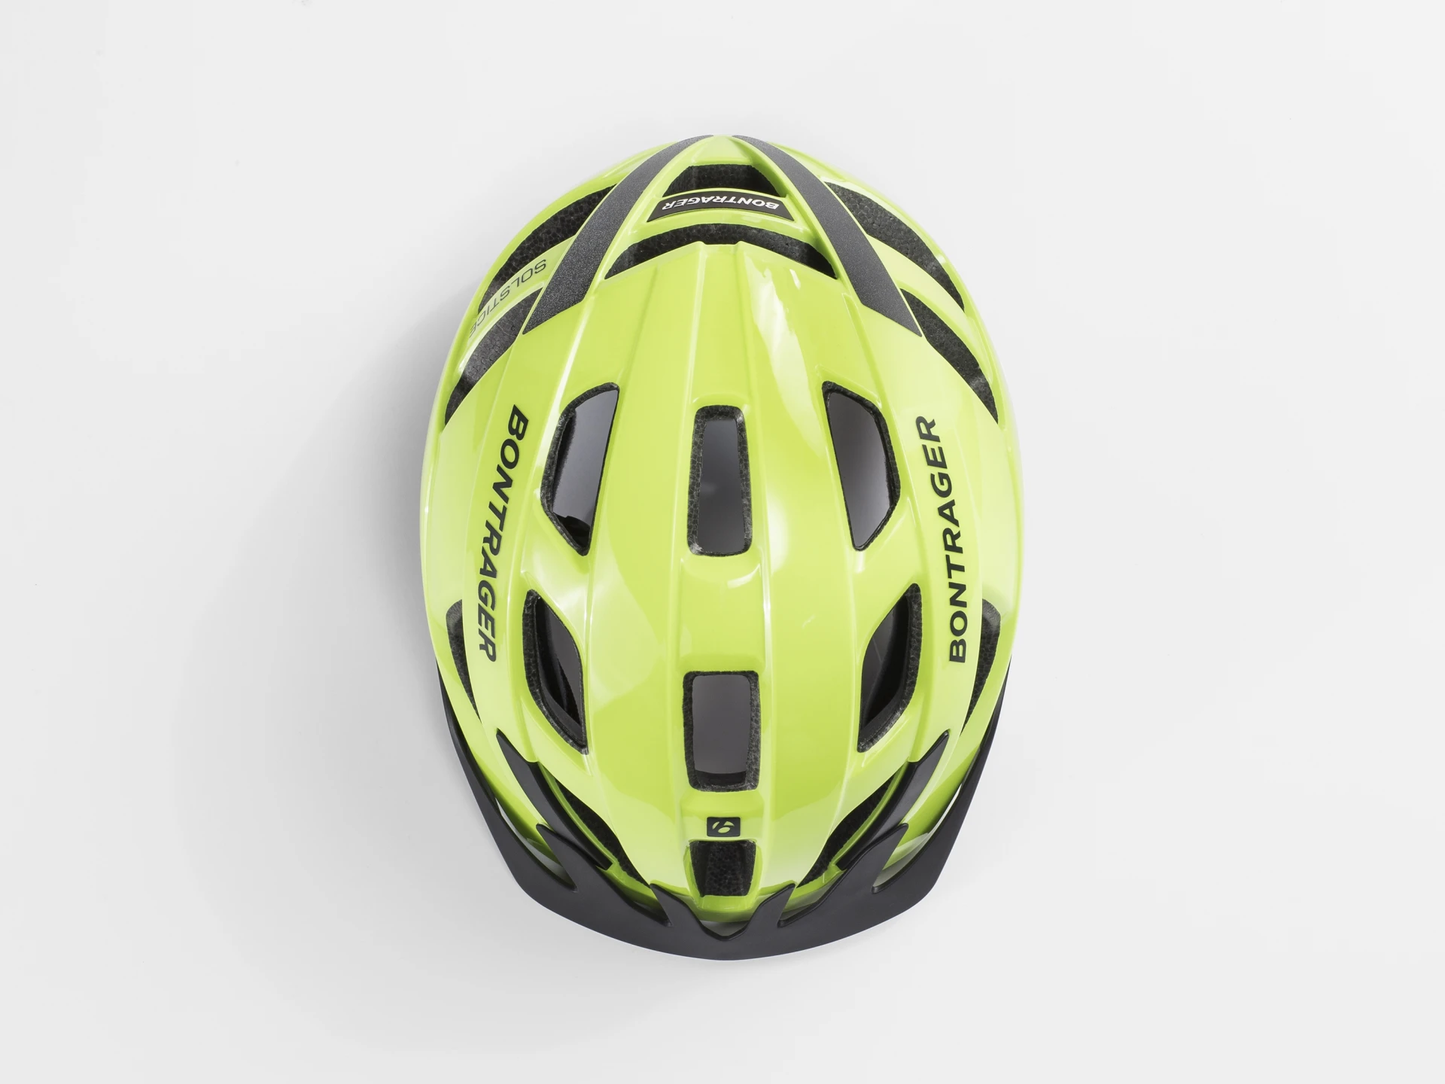 Bontrager Solstice Bike 頭盔 / Bontrager Solstice Bike Helmet